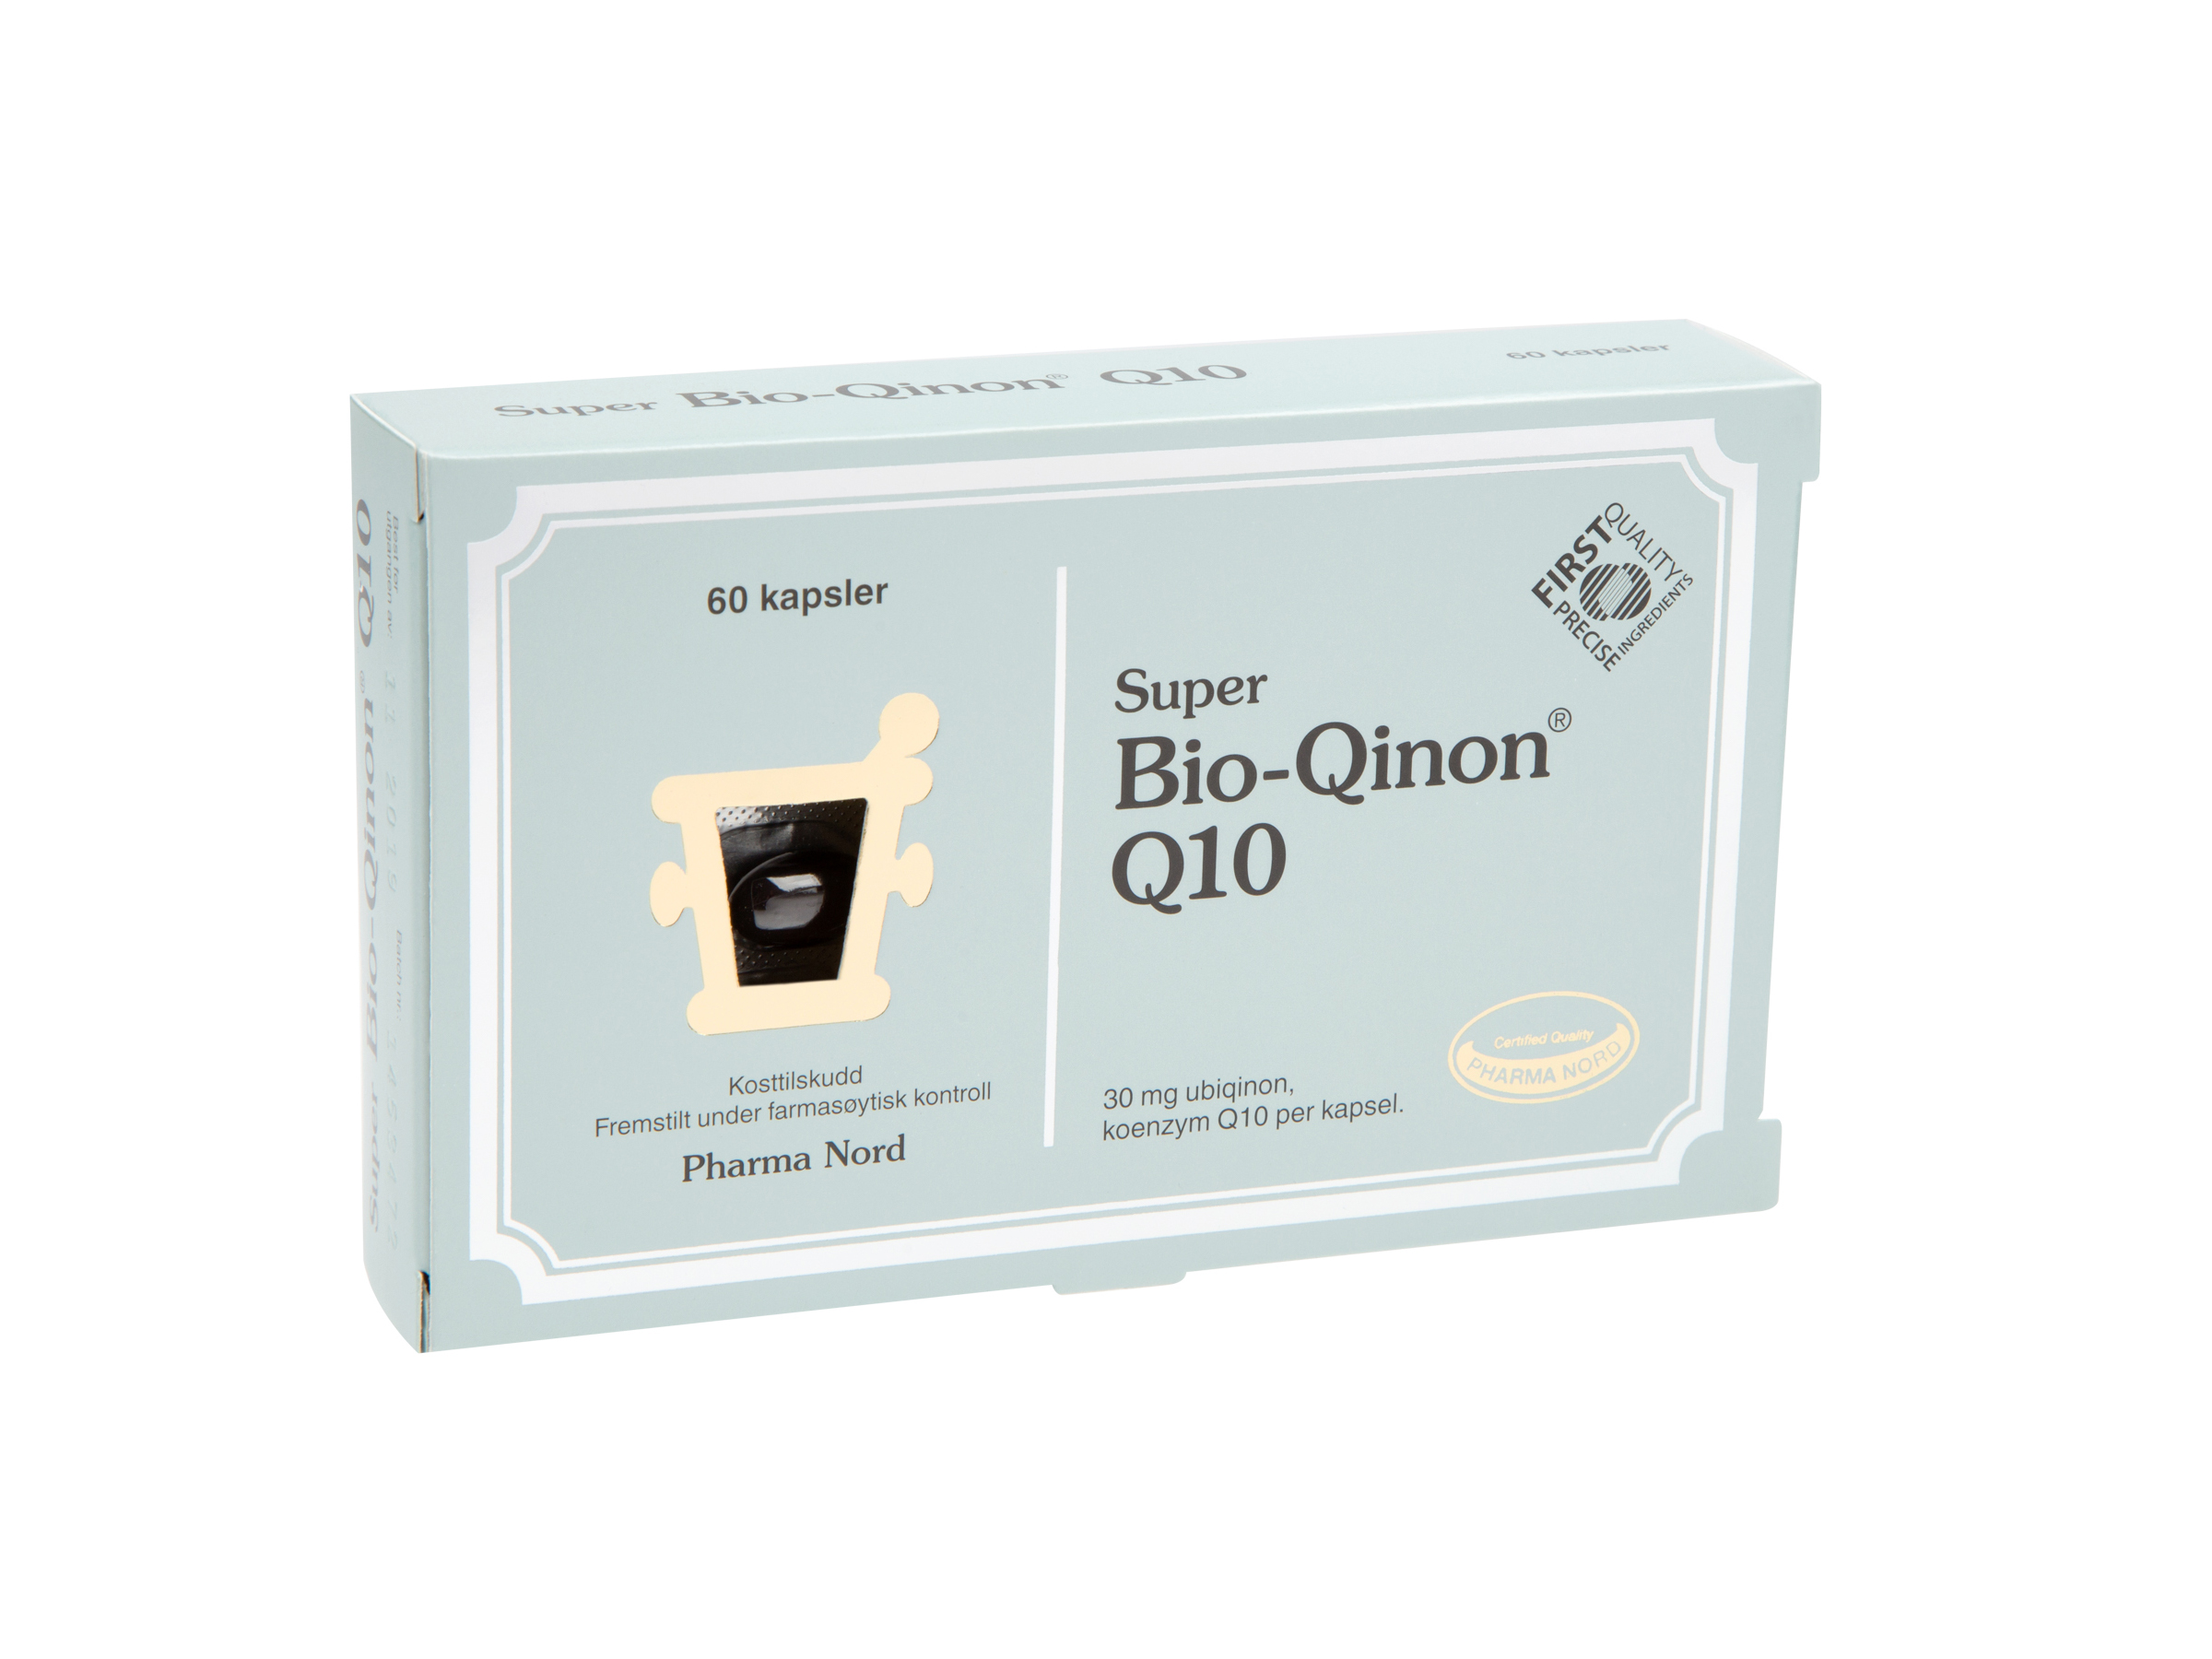 Pharma Nord Bio-Qinon Active Q10 30 mg kapsler, 60 stk.